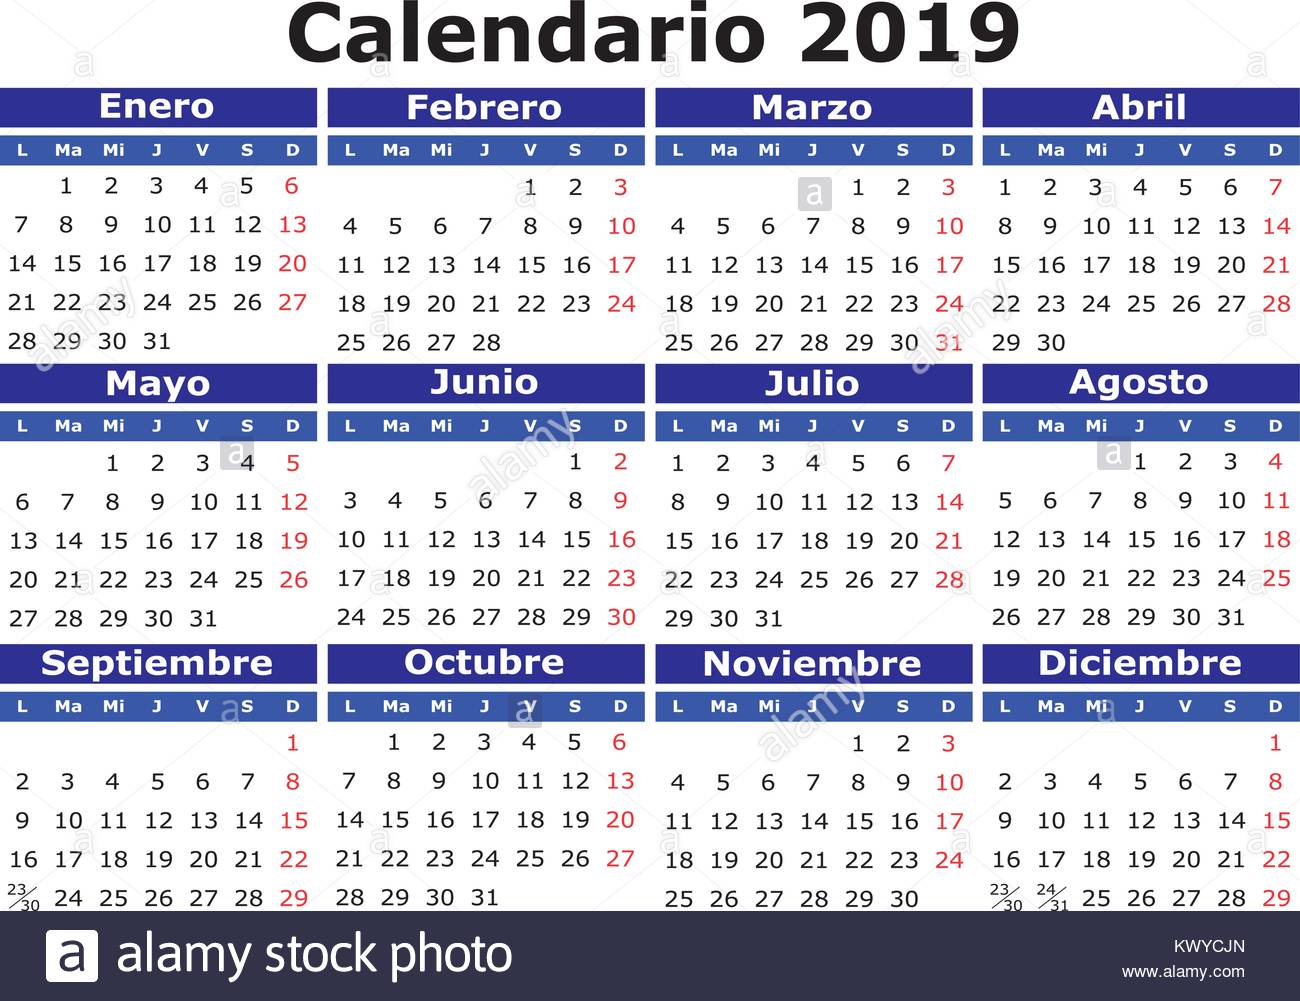 18 Calendrier Du Vecteur En Espagnol Facile Pour Editer Et D Appliquer Calendario 18 Image Vectorielle Stock Alamy